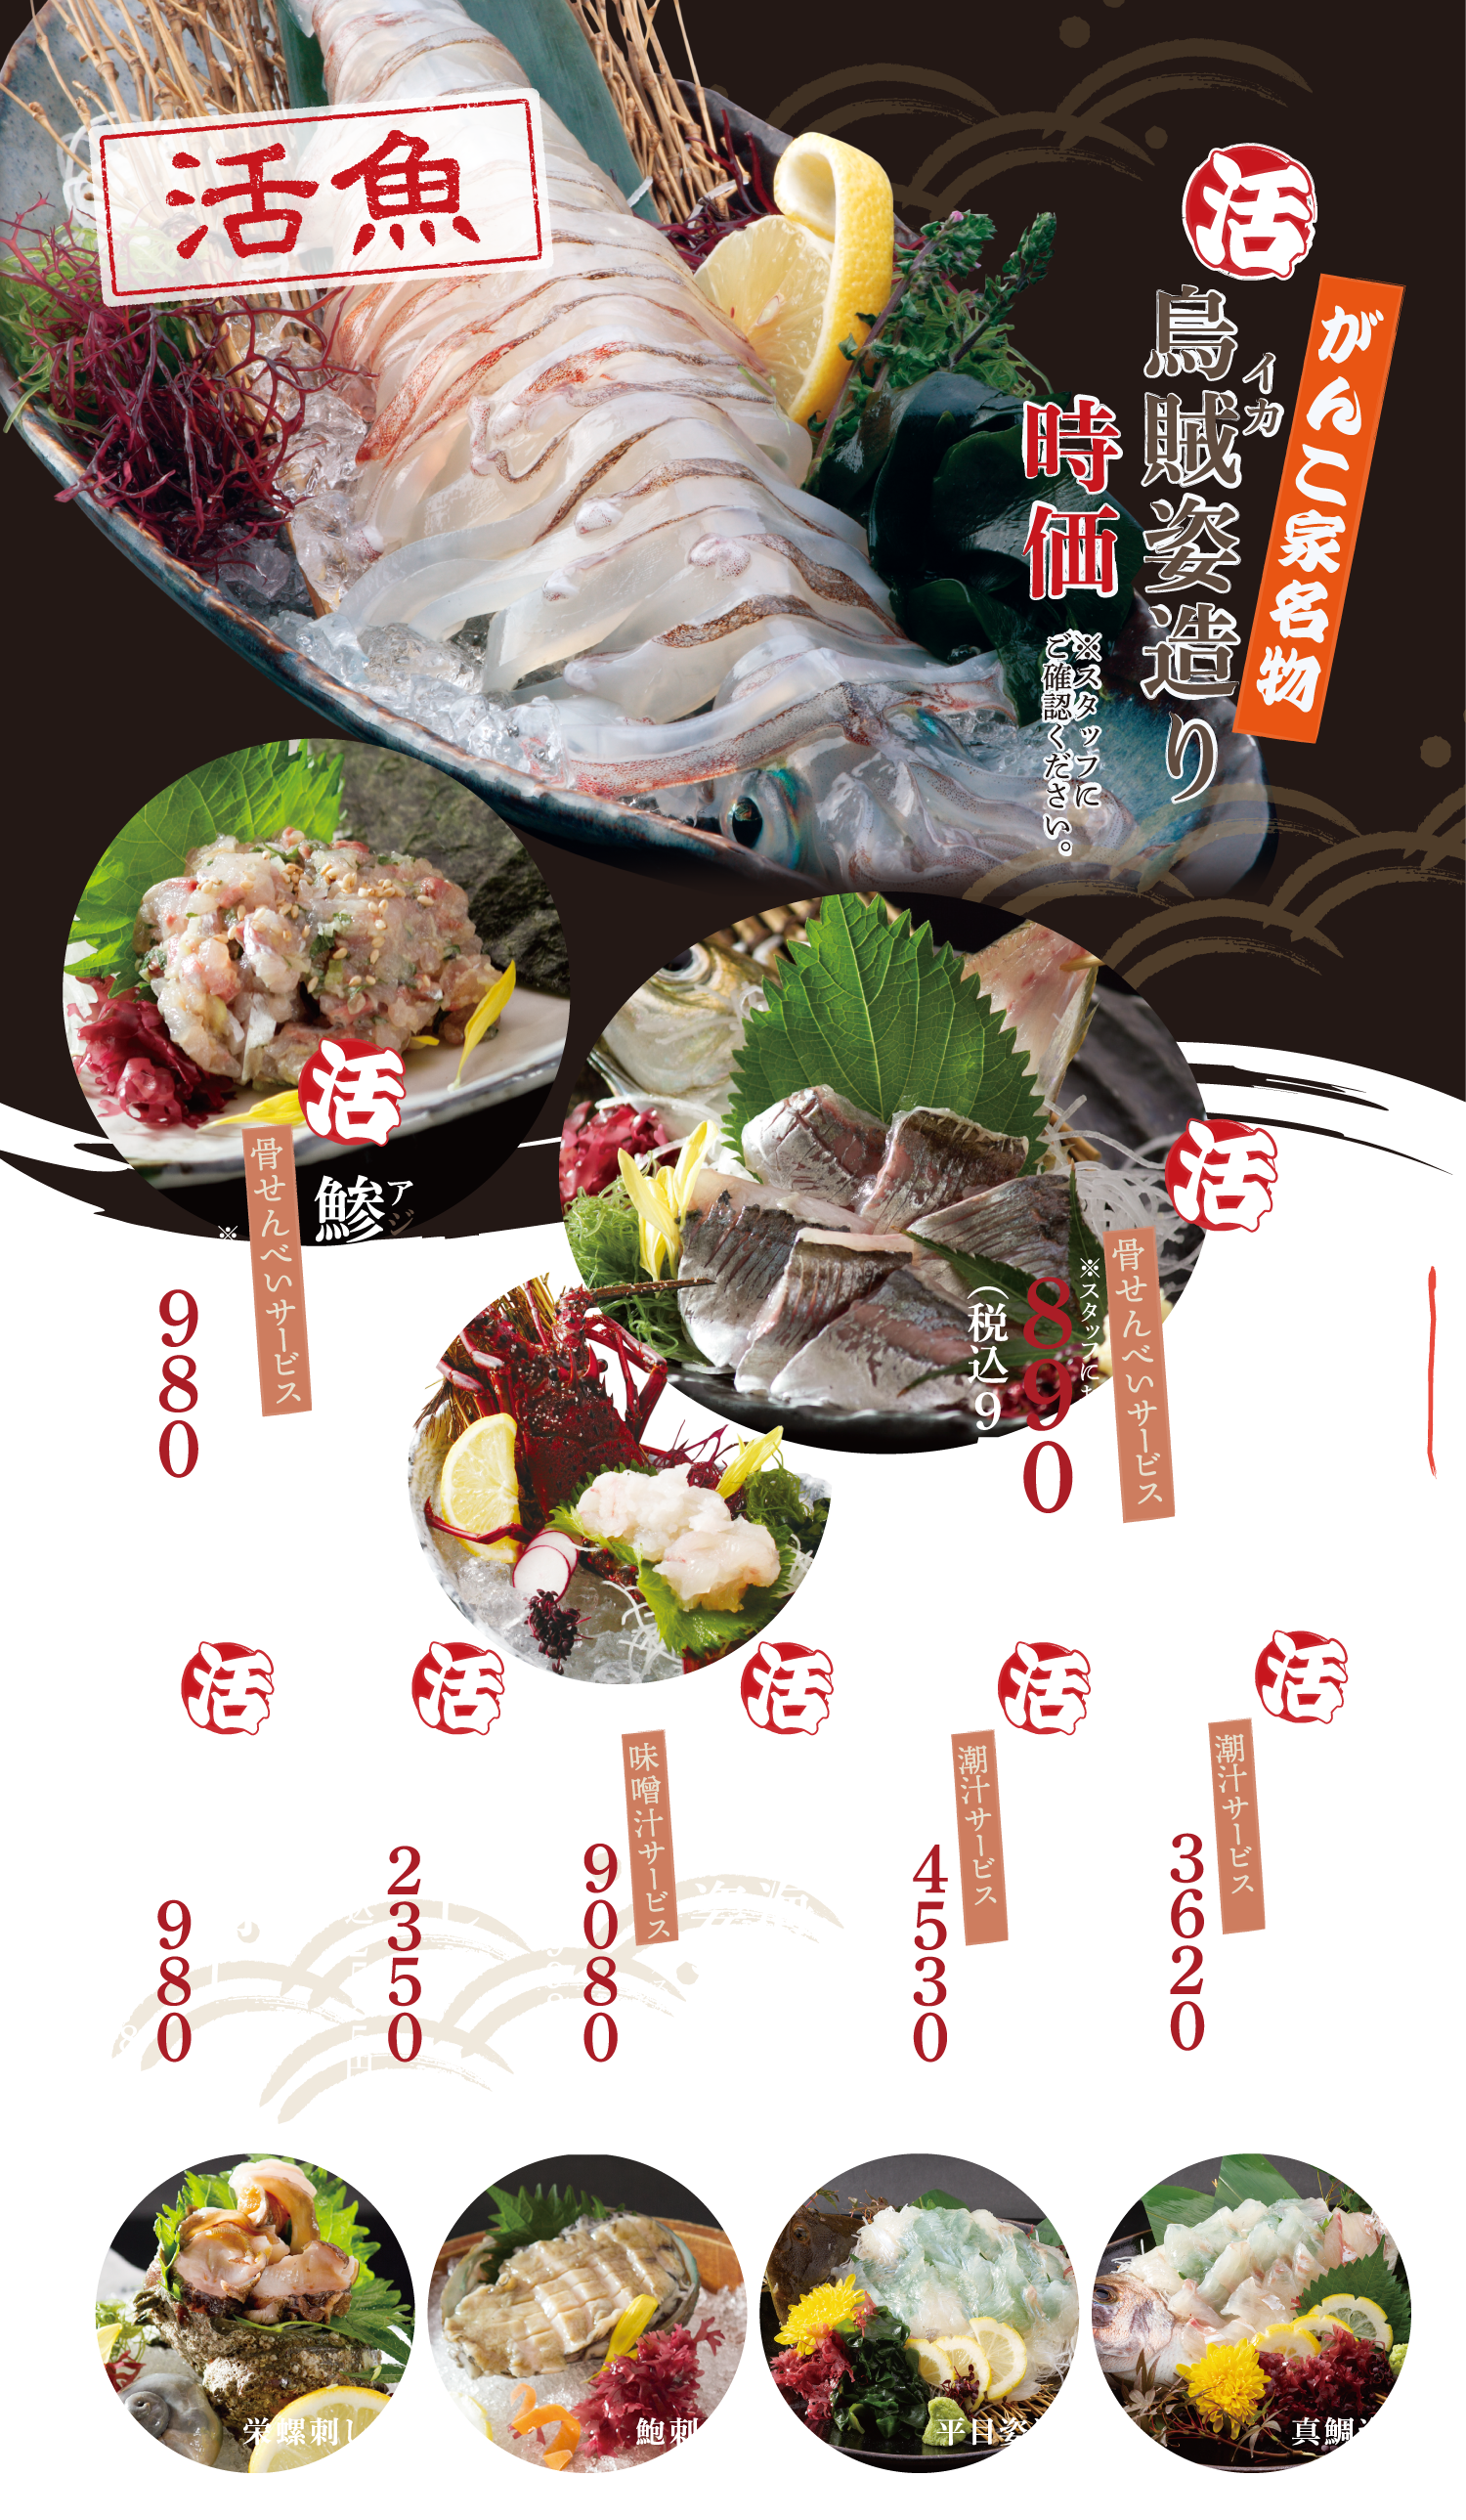 おしながき - 夜のメニュー - 水戸 魚旬 がんこ家 / 魚 魚屋 魚料理 宴会 居酒屋